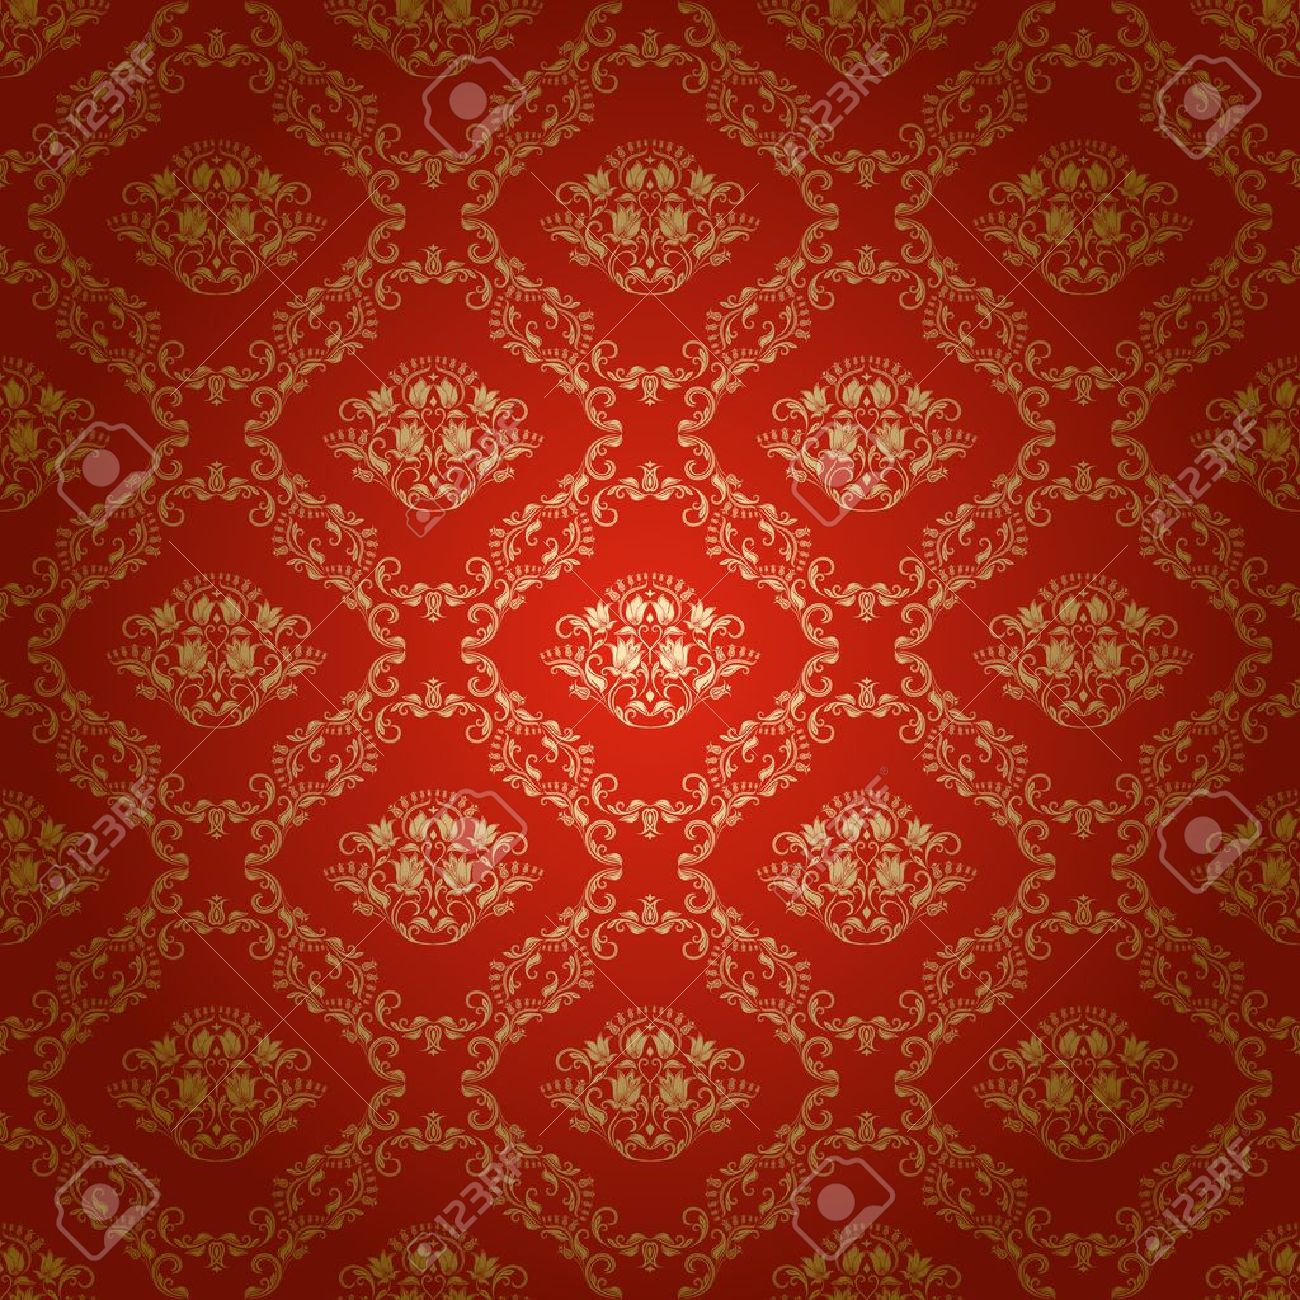 royal wallpaper,pattern,orange,red,brown,design